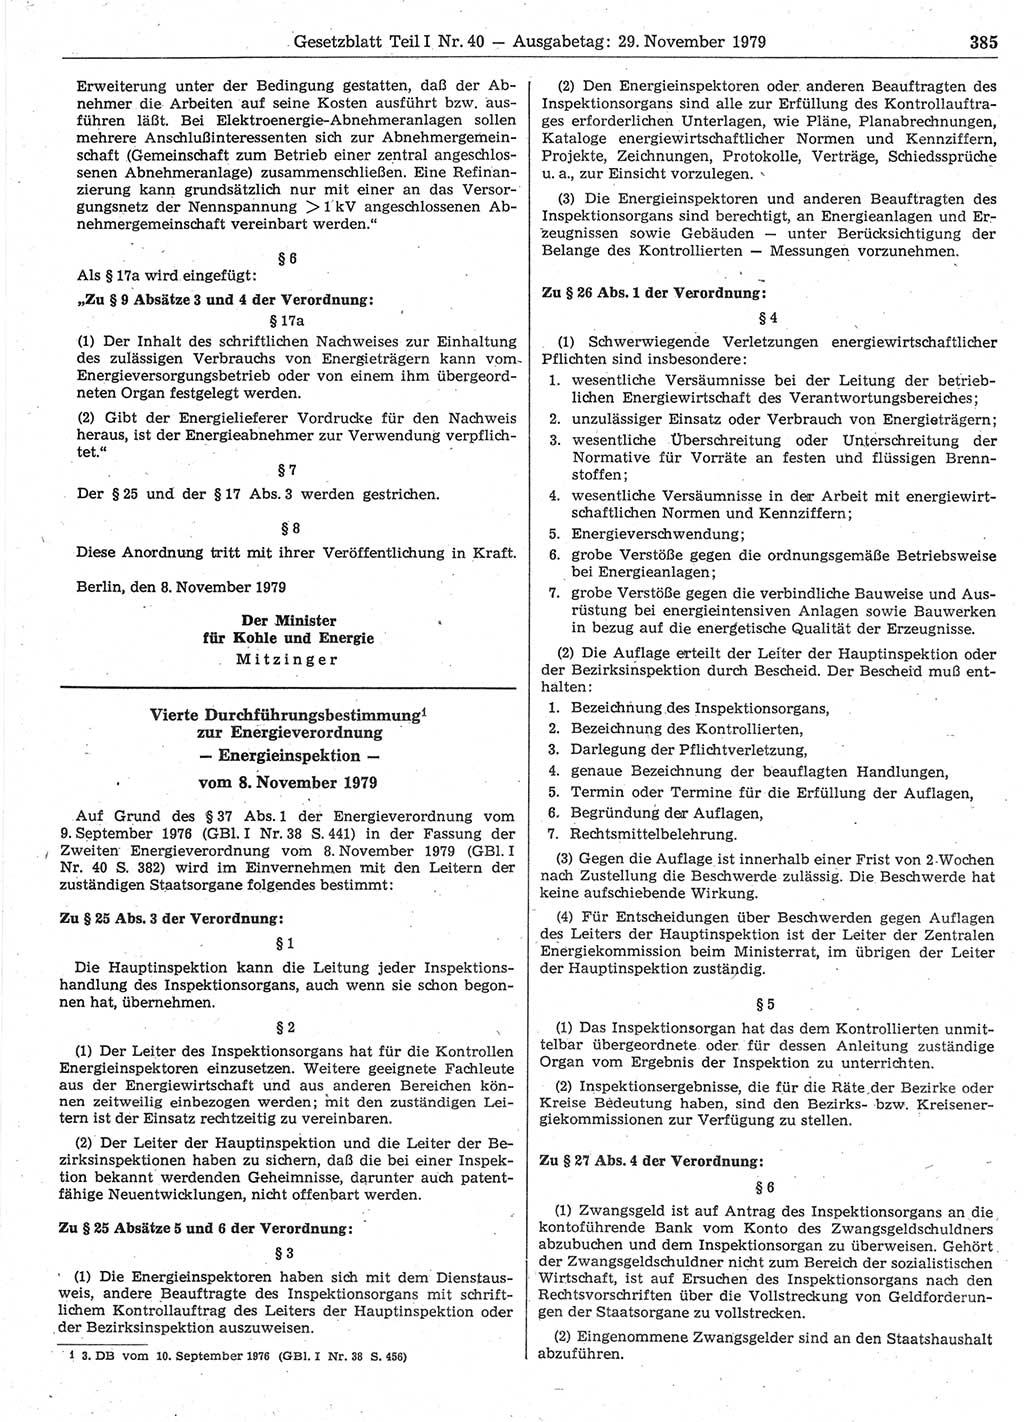 Gesetzblatt (GBl.) der Deutschen Demokratischen Republik (DDR) Teil Ⅰ 1979, Seite 385 (GBl. DDR Ⅰ 1979, S. 385)